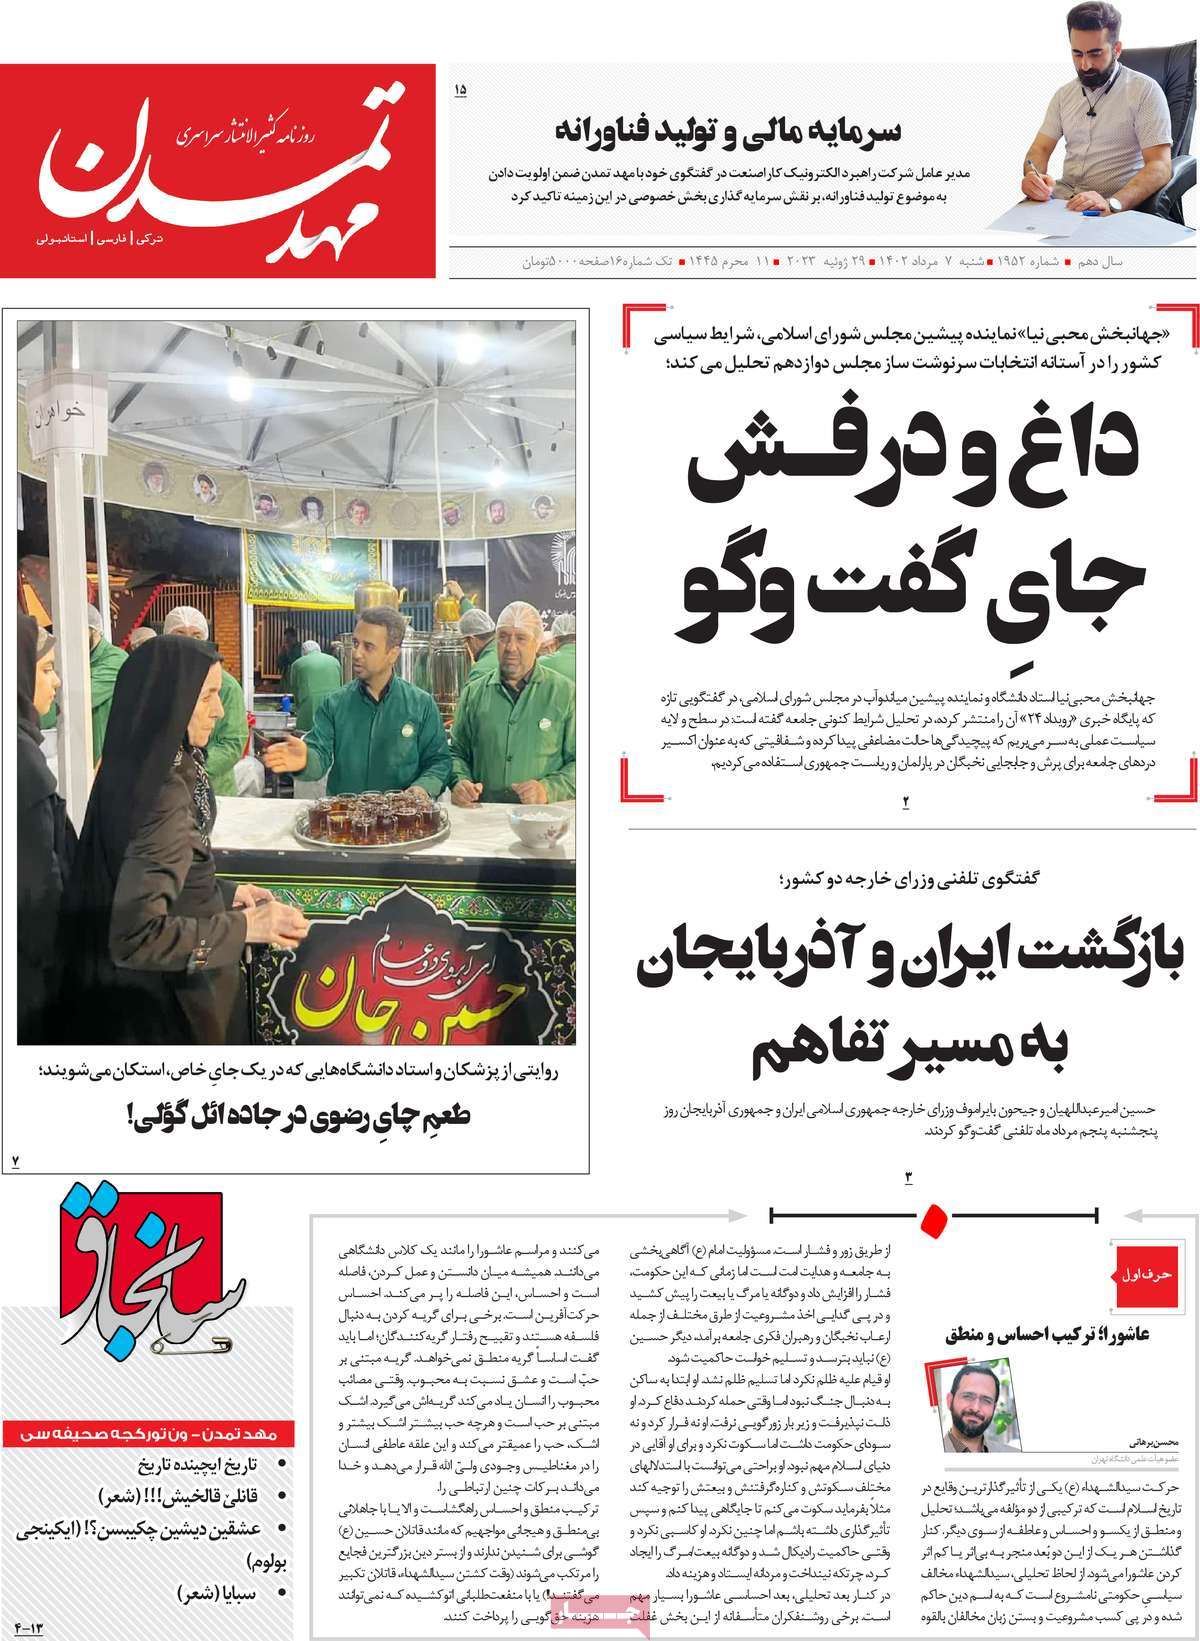 صفحه اول روزنامه های رسمی کشور / روزنامه مهد تمدن